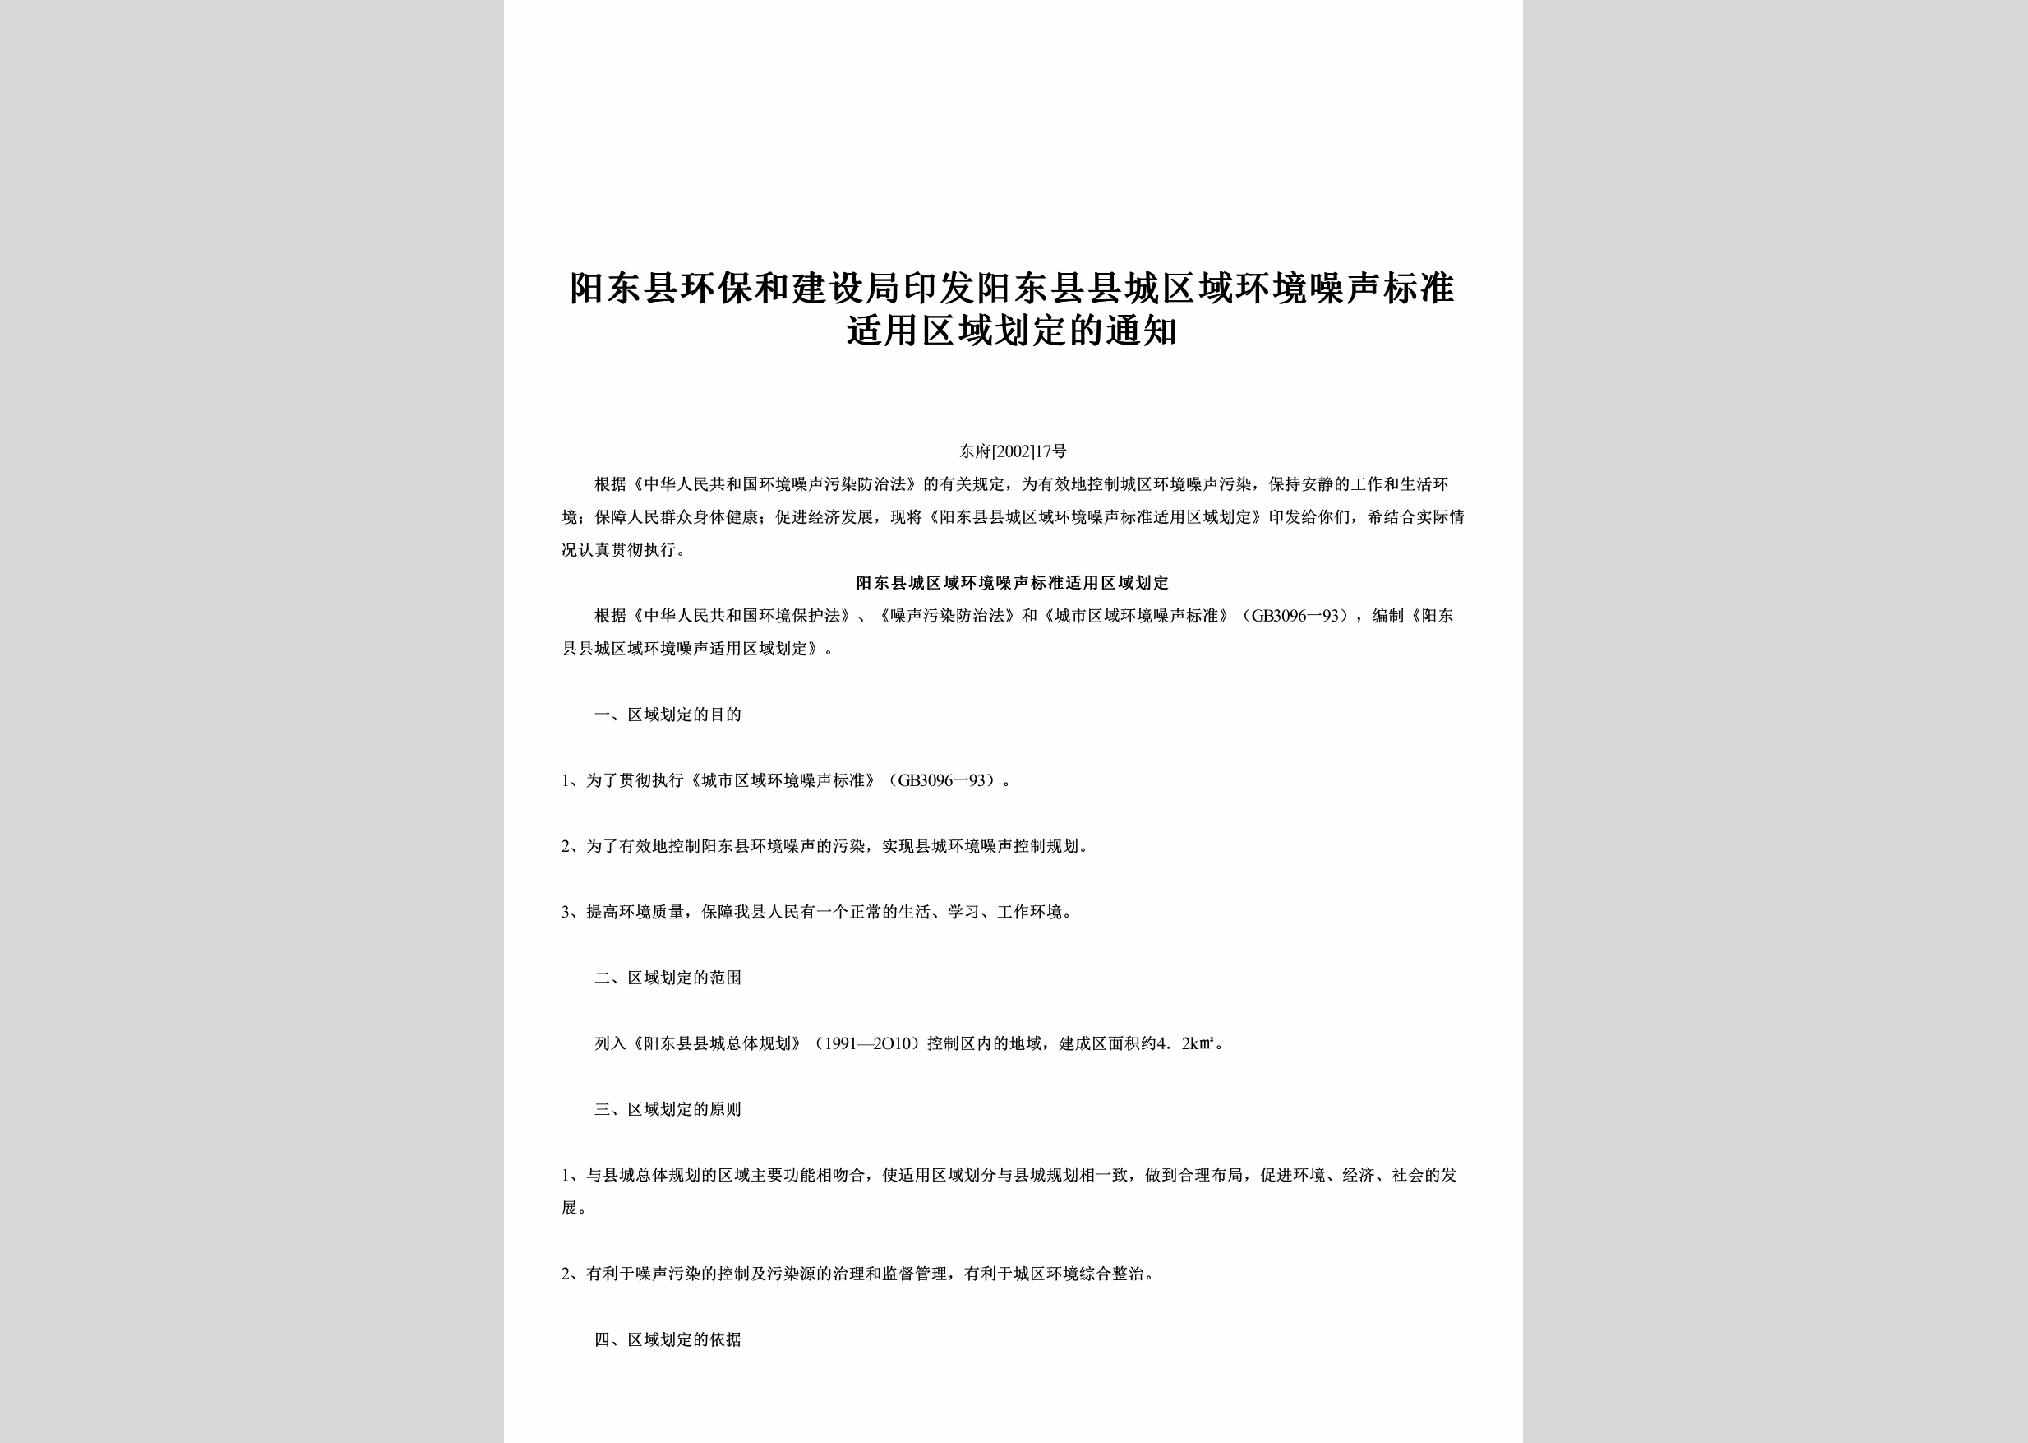 东府[2002]17号：印发阳东县县城区域环境噪声标准适用区域划定的通知